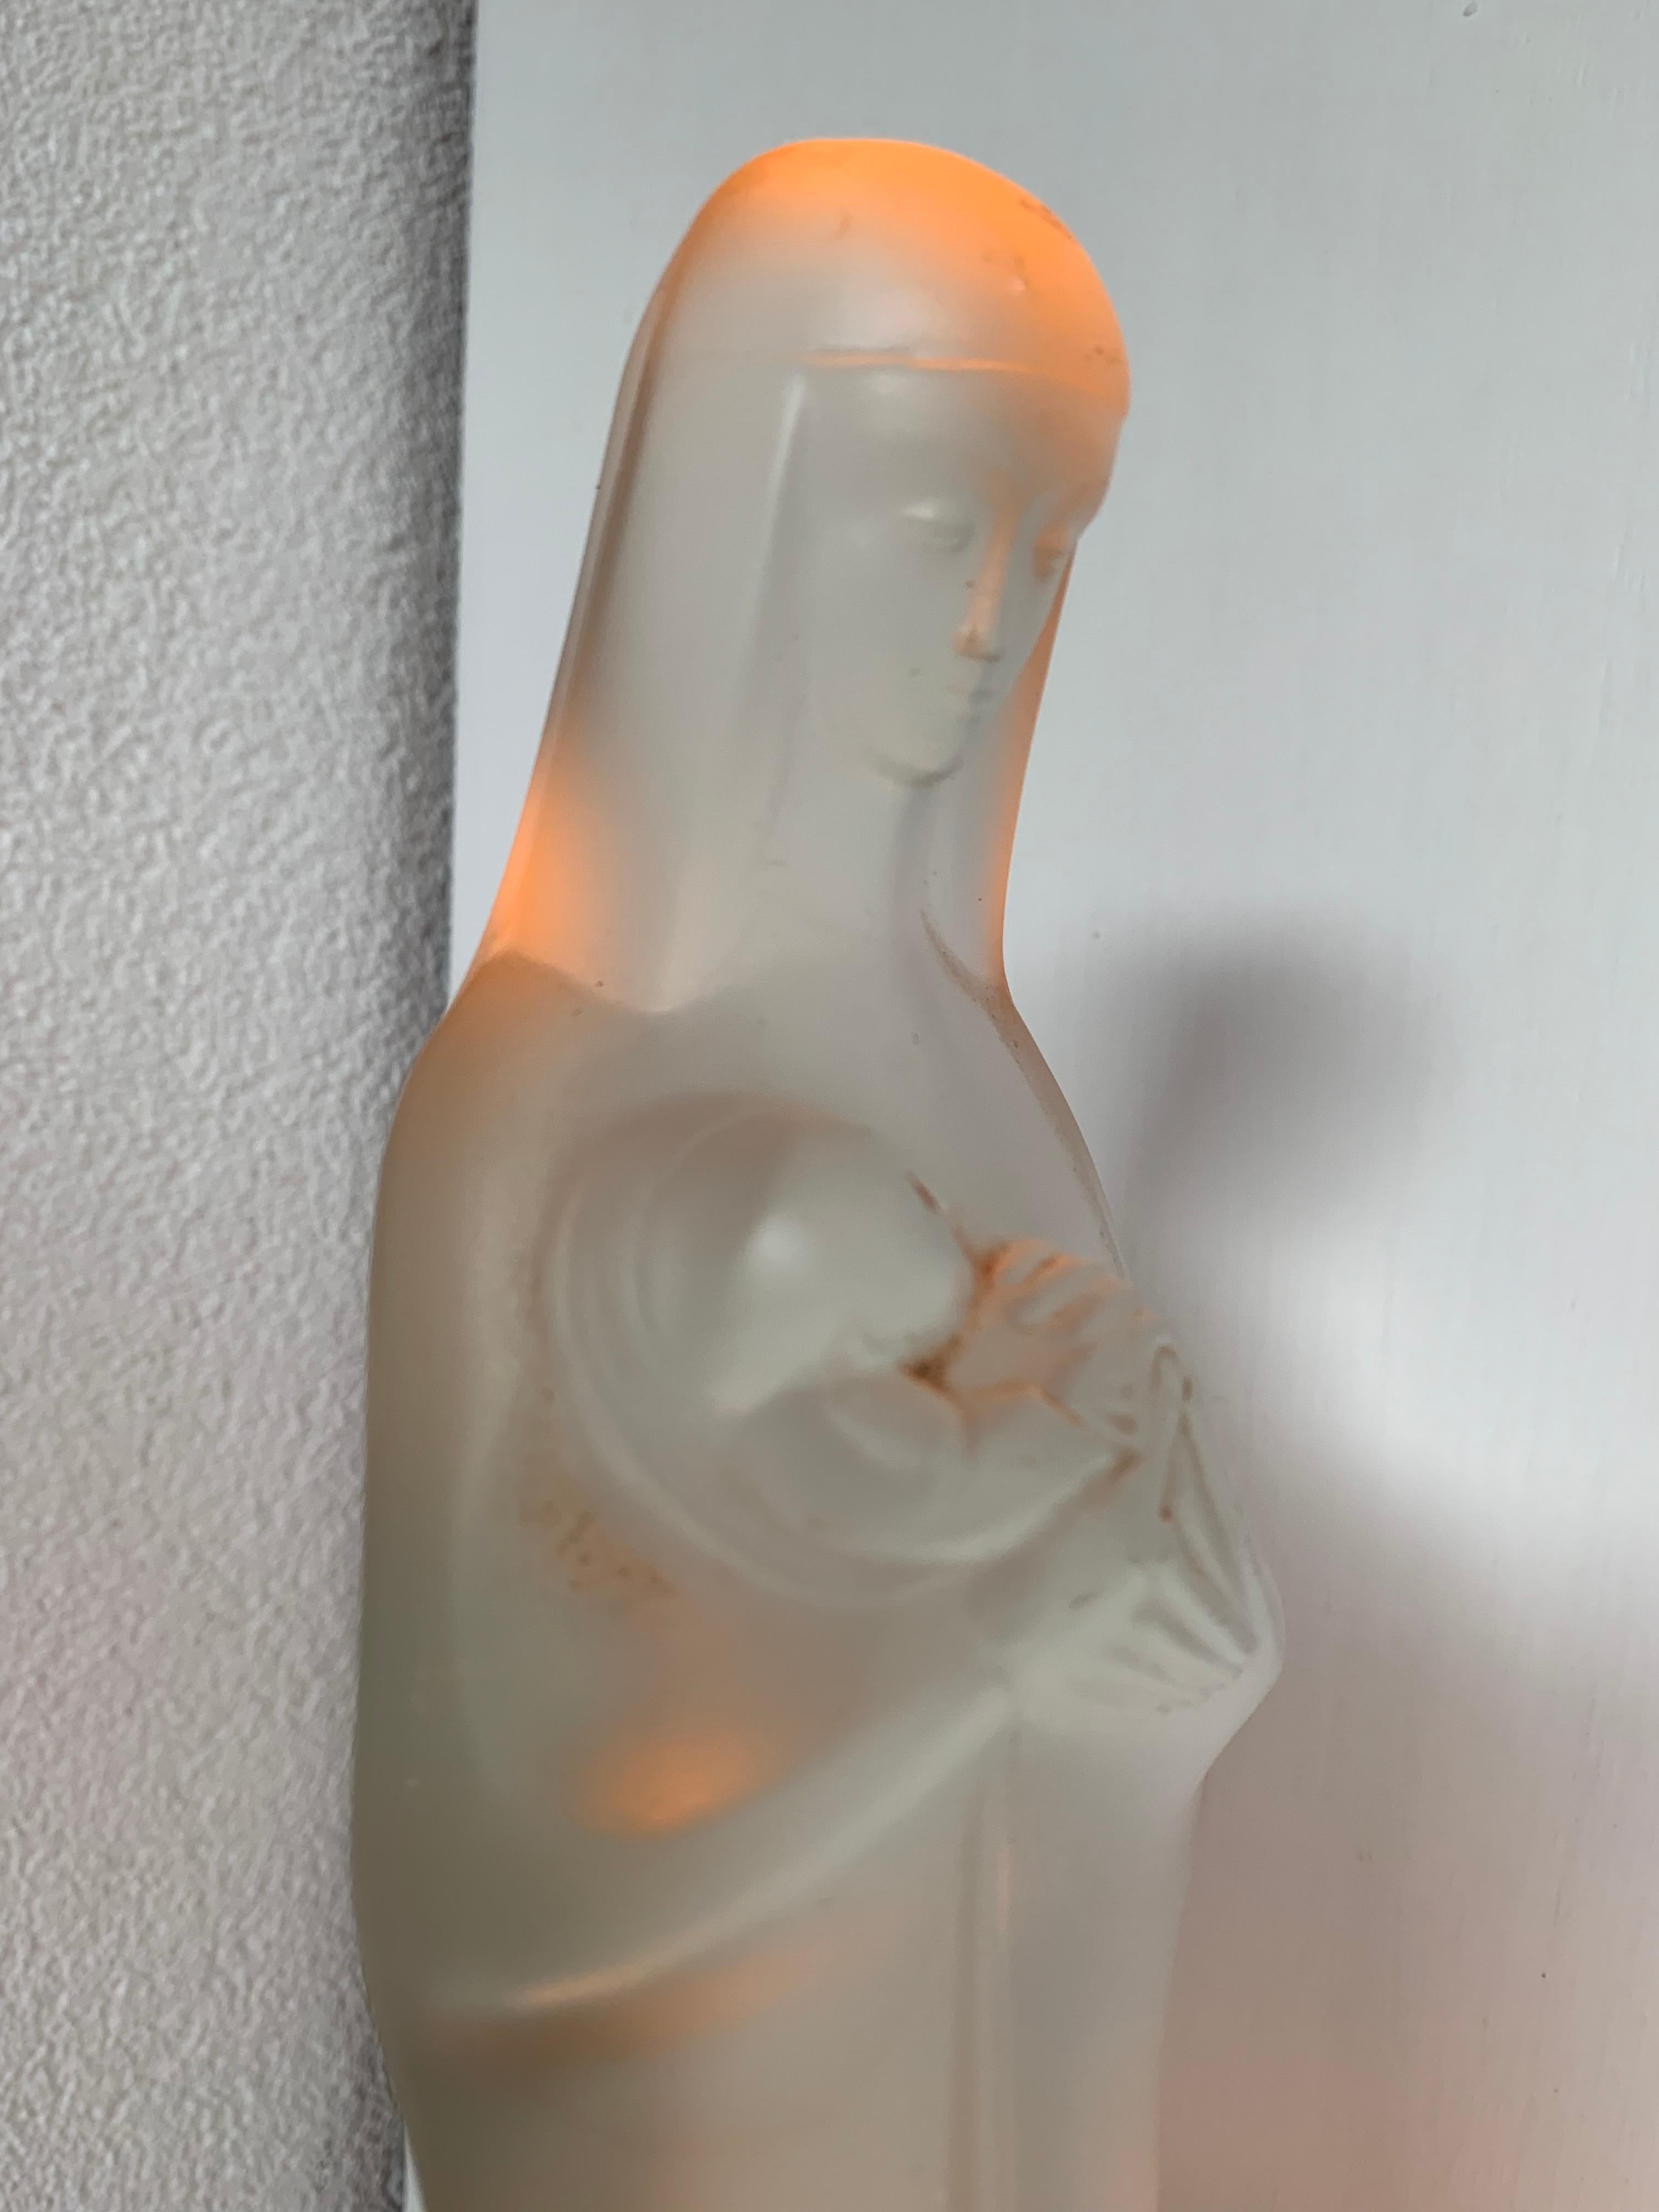 Wunderschöne und inspirierende Mutter-Maria-Statuette von Steph Uiterwaal.

Wenn Sie ein Sammler von stilvoller und bedeutungsvoller religiöser Kunst sind, dann könnte diese heitere und göttliche Skulptur von Maria, die ihr neugeborenes Kind Jesus